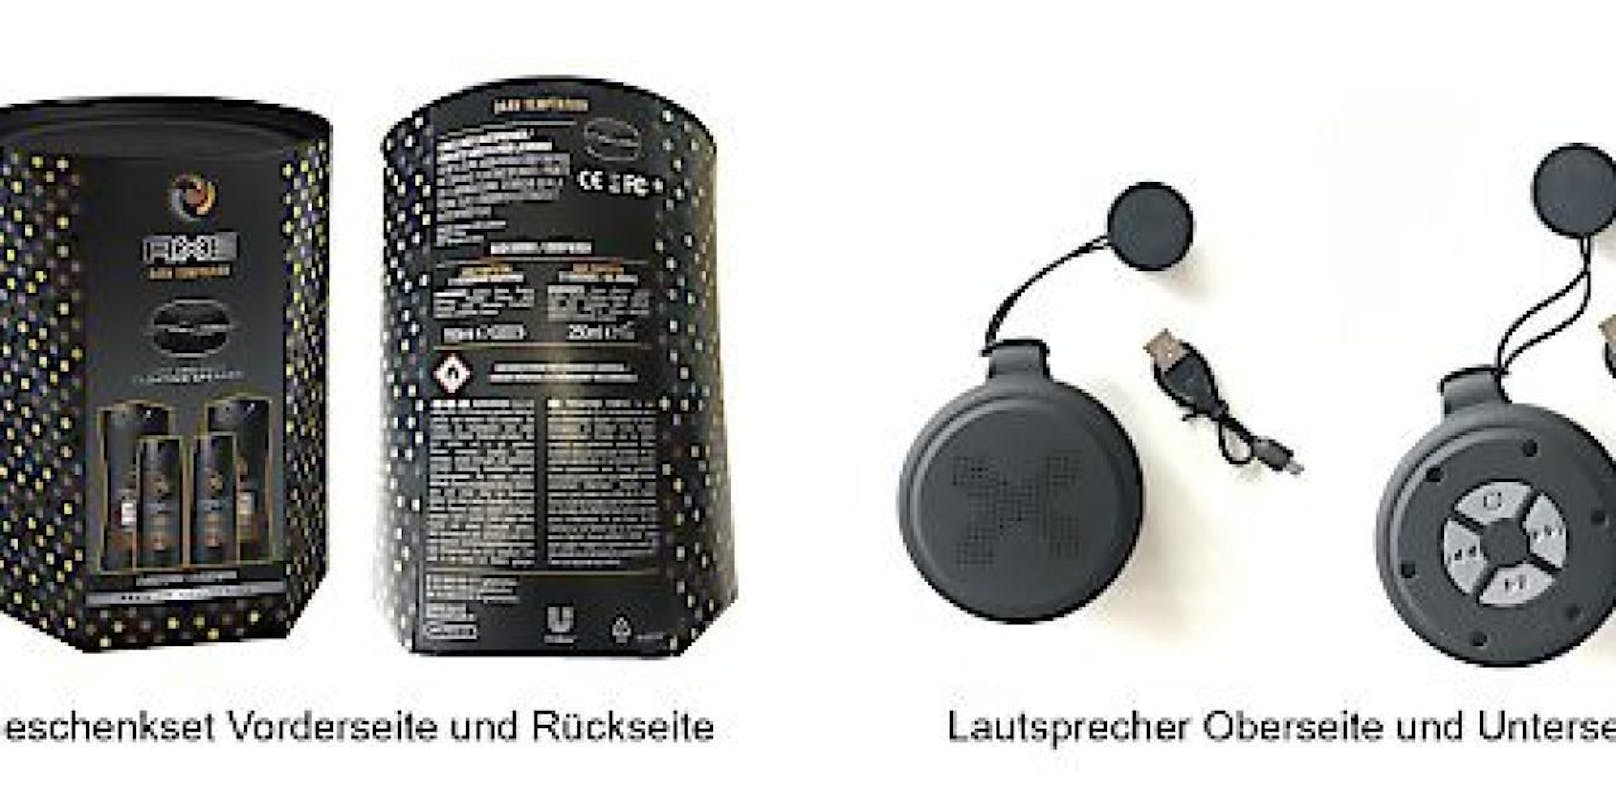 Das Ladekabel für Lautsprecher aus dem AXE Dark Temptation Geschenkset könnte beim Aufladen überhitzen.